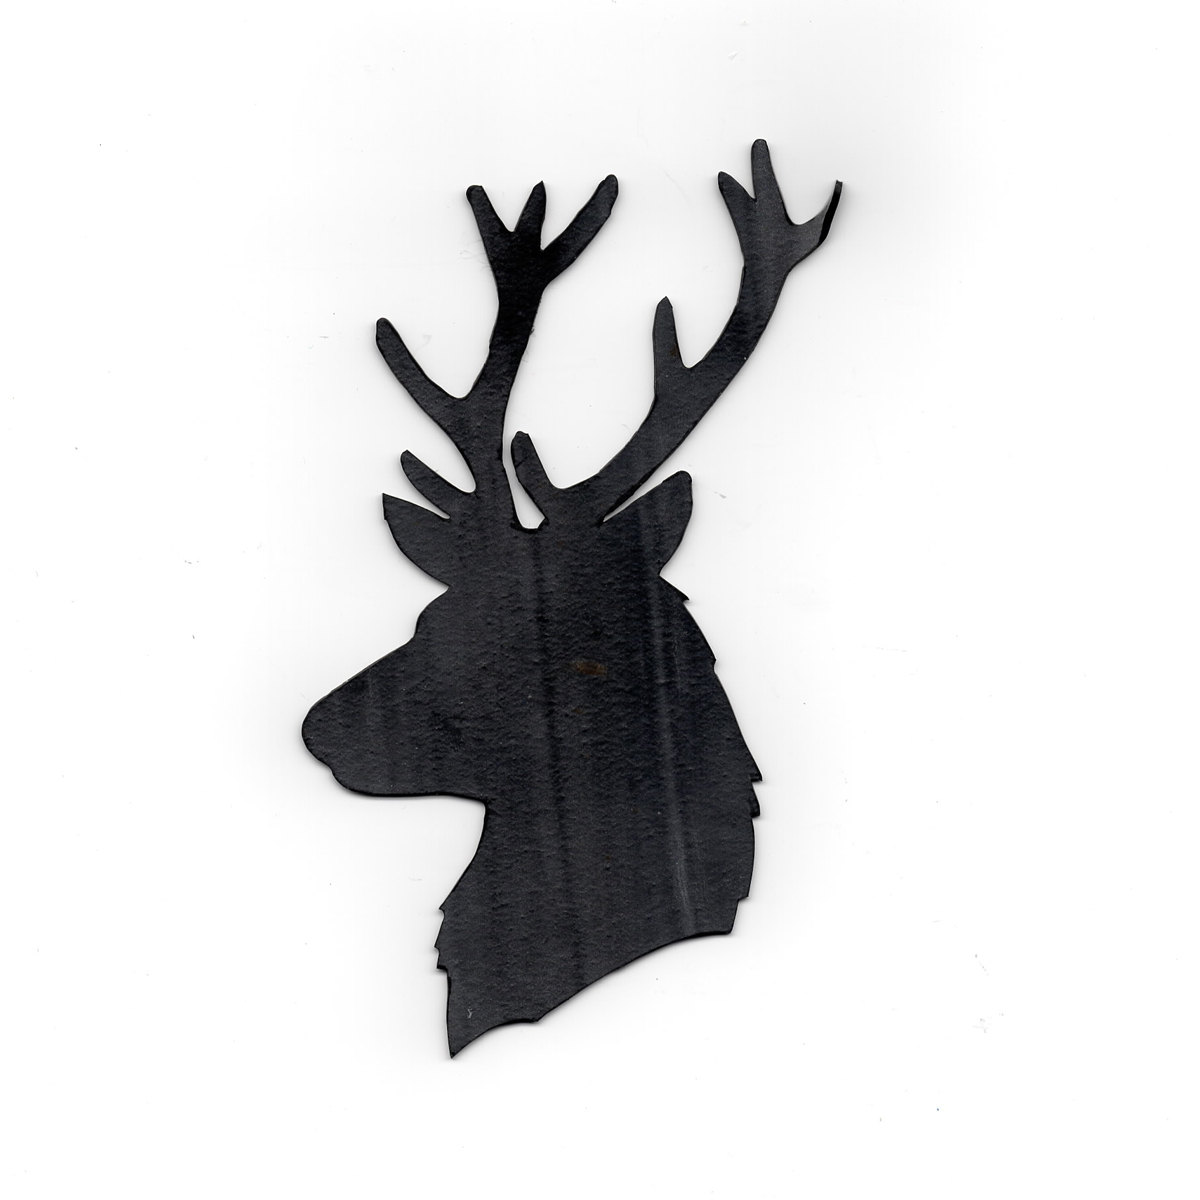 Popular items for deer silhouette art on Etsy